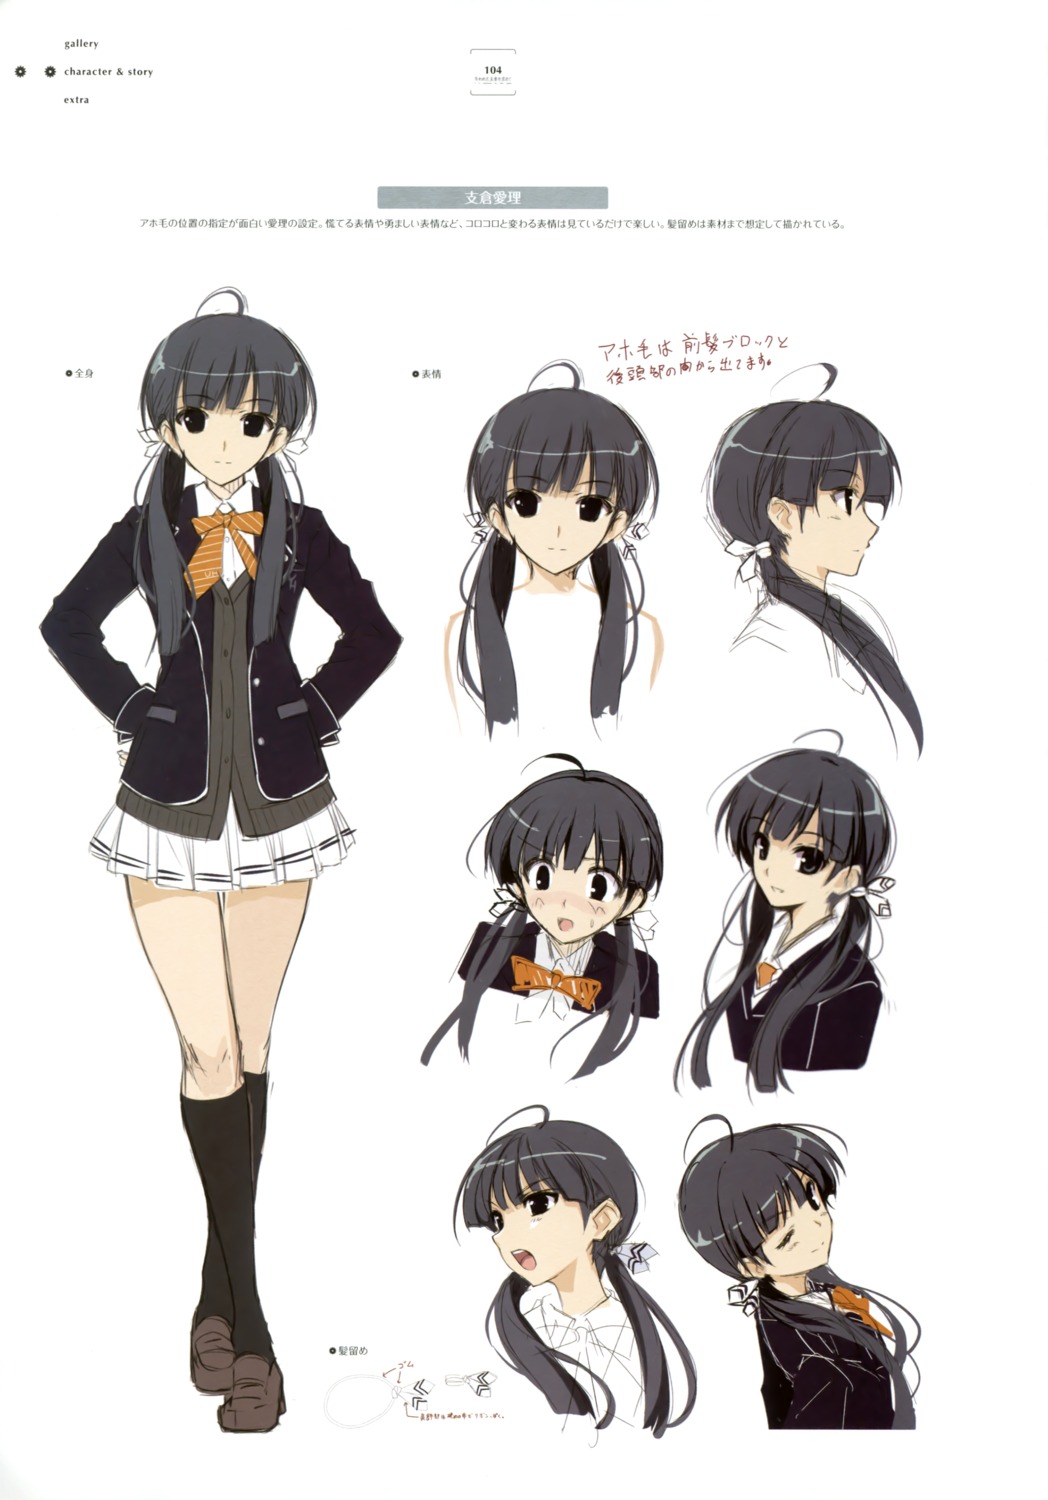 Ushinawareta Mirai Wo Motomete Character Design Seifuku Sketch me Yande Re